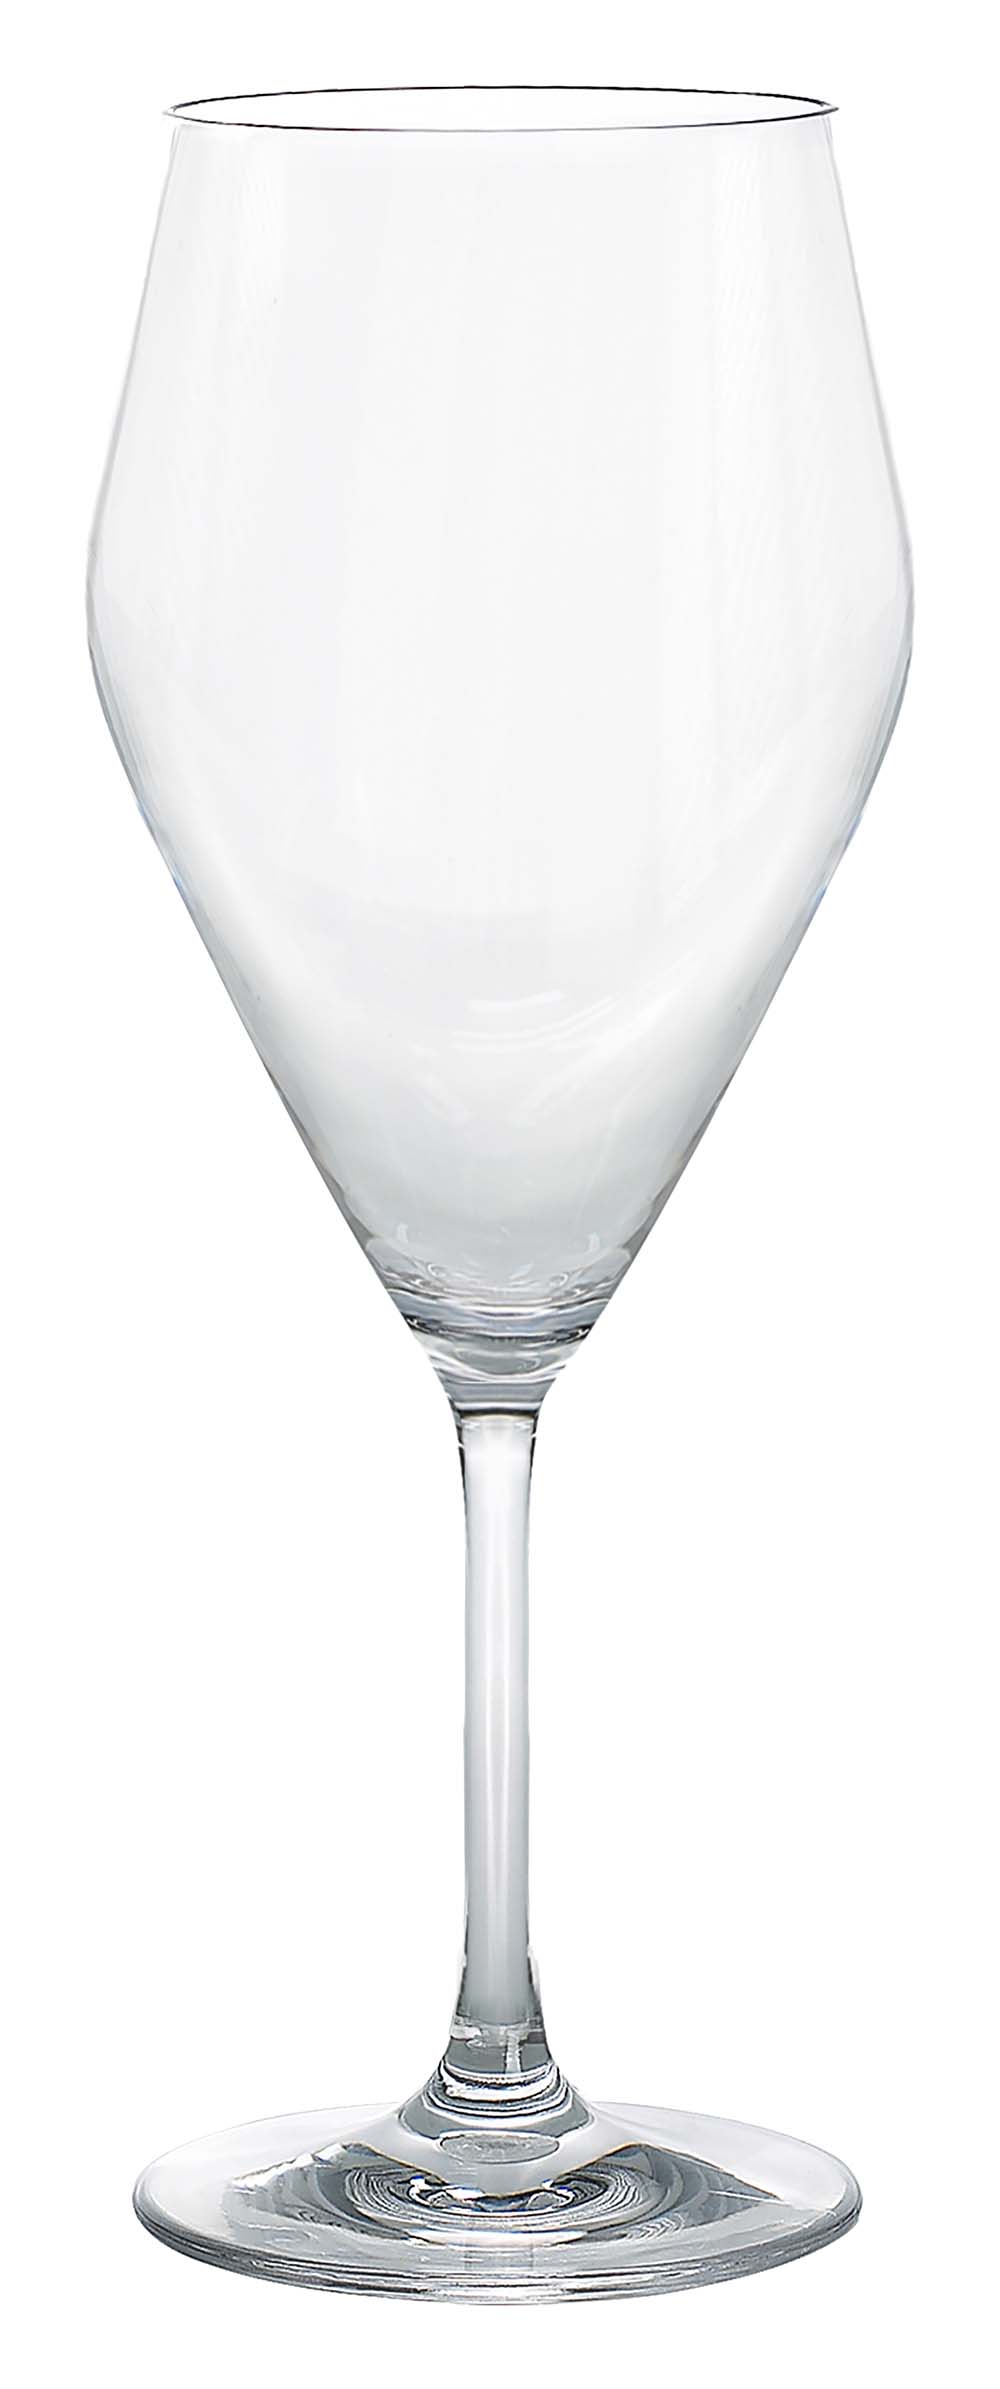 6968928 Een rode wijnglas uit de Royal line collectie. Vrijwel onbreekbaar door hoogwaardig MS materiaal. Bestaat uit een set van 2 stuks. Zeer gemakkelijk te reinigen en langdurig te gebruiken, wat het glas erg duurzaam maakt. Daarnaast is het rode wijnglas lichtgewicht en krasbestendig. Inhoud: 400 ml.